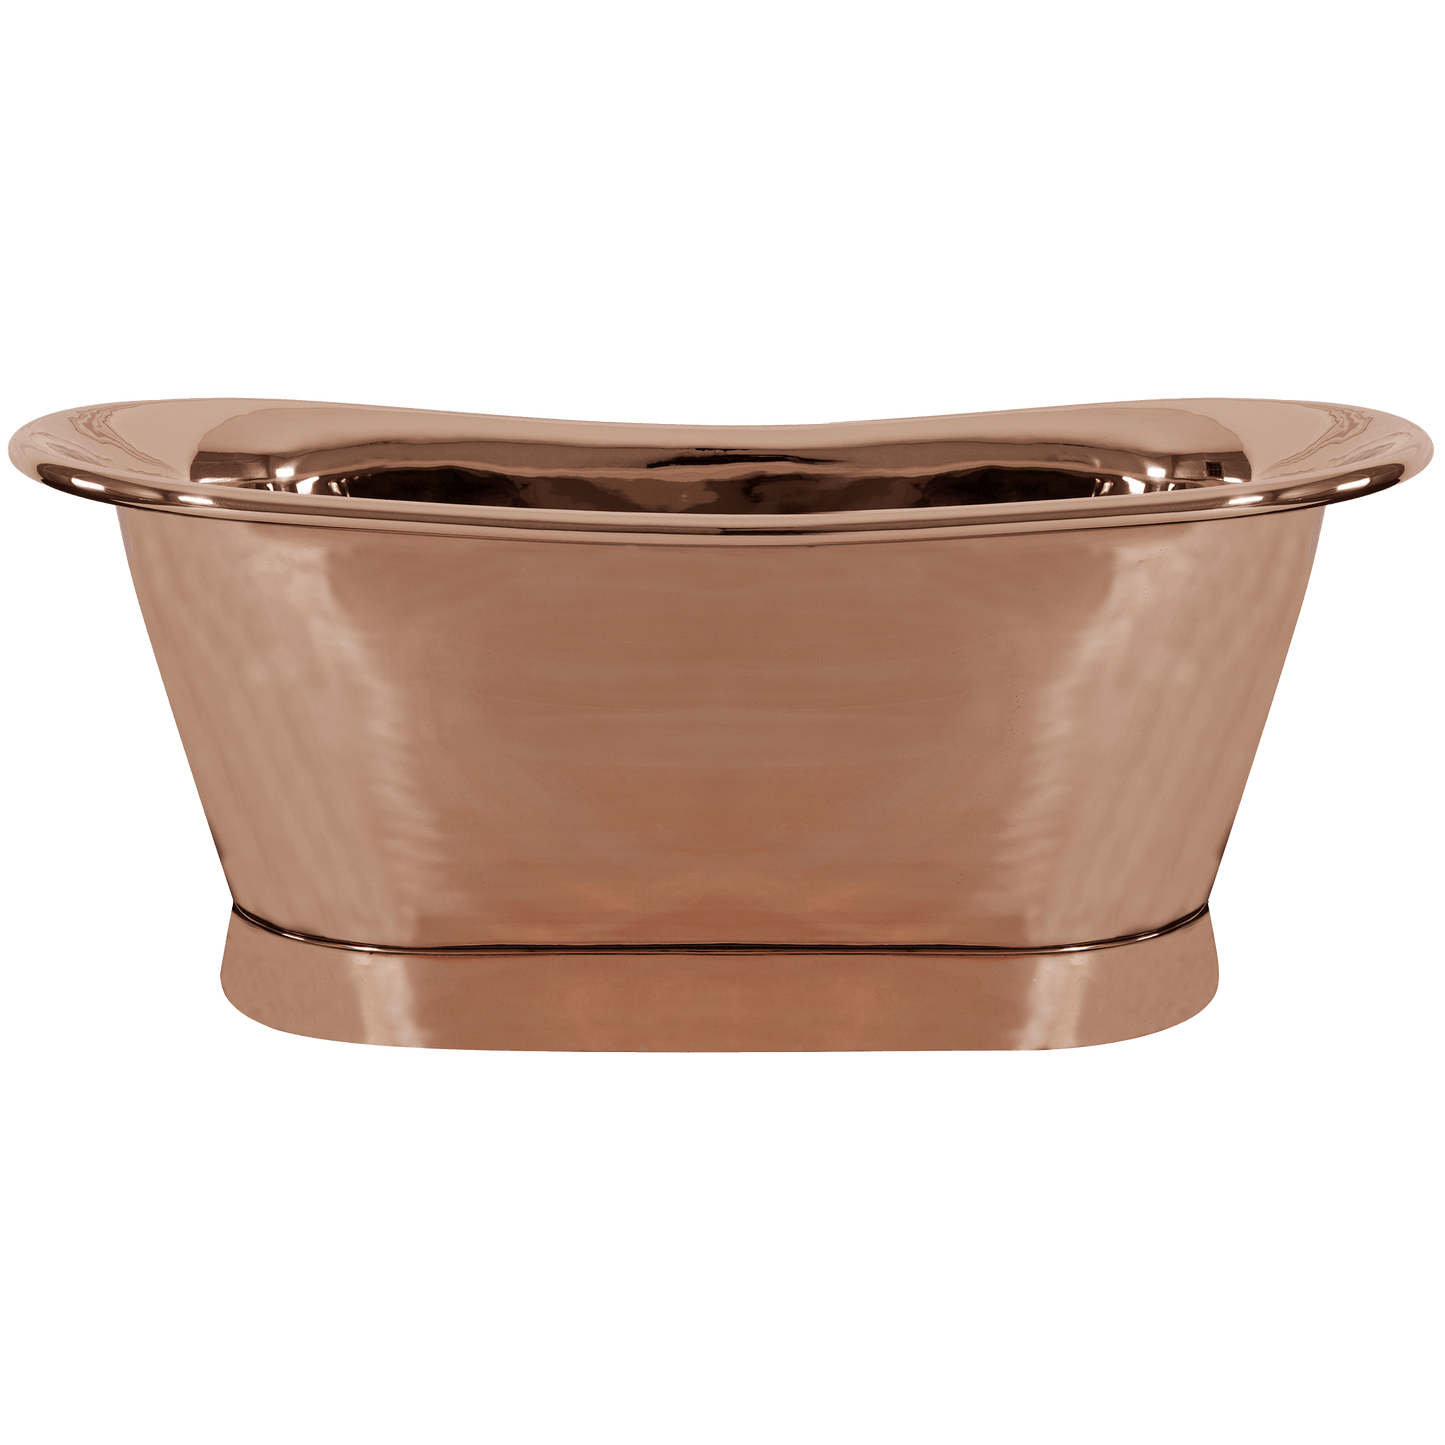 Copper Roll-top bath tub